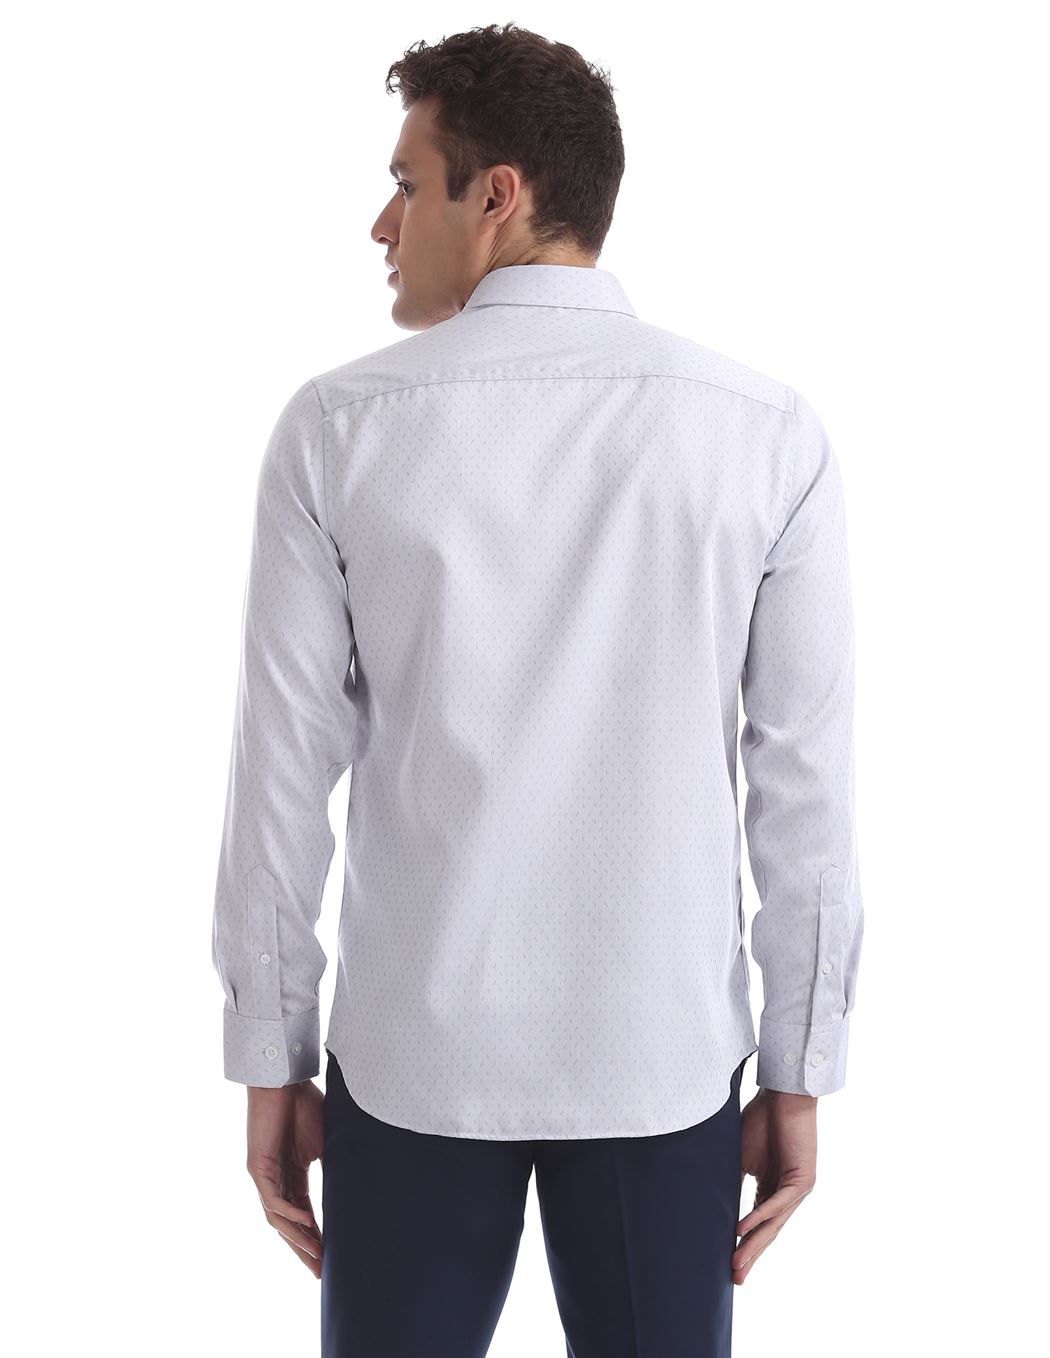 U.S. Polo Assn. Men Self Design Formal Wear Shirt